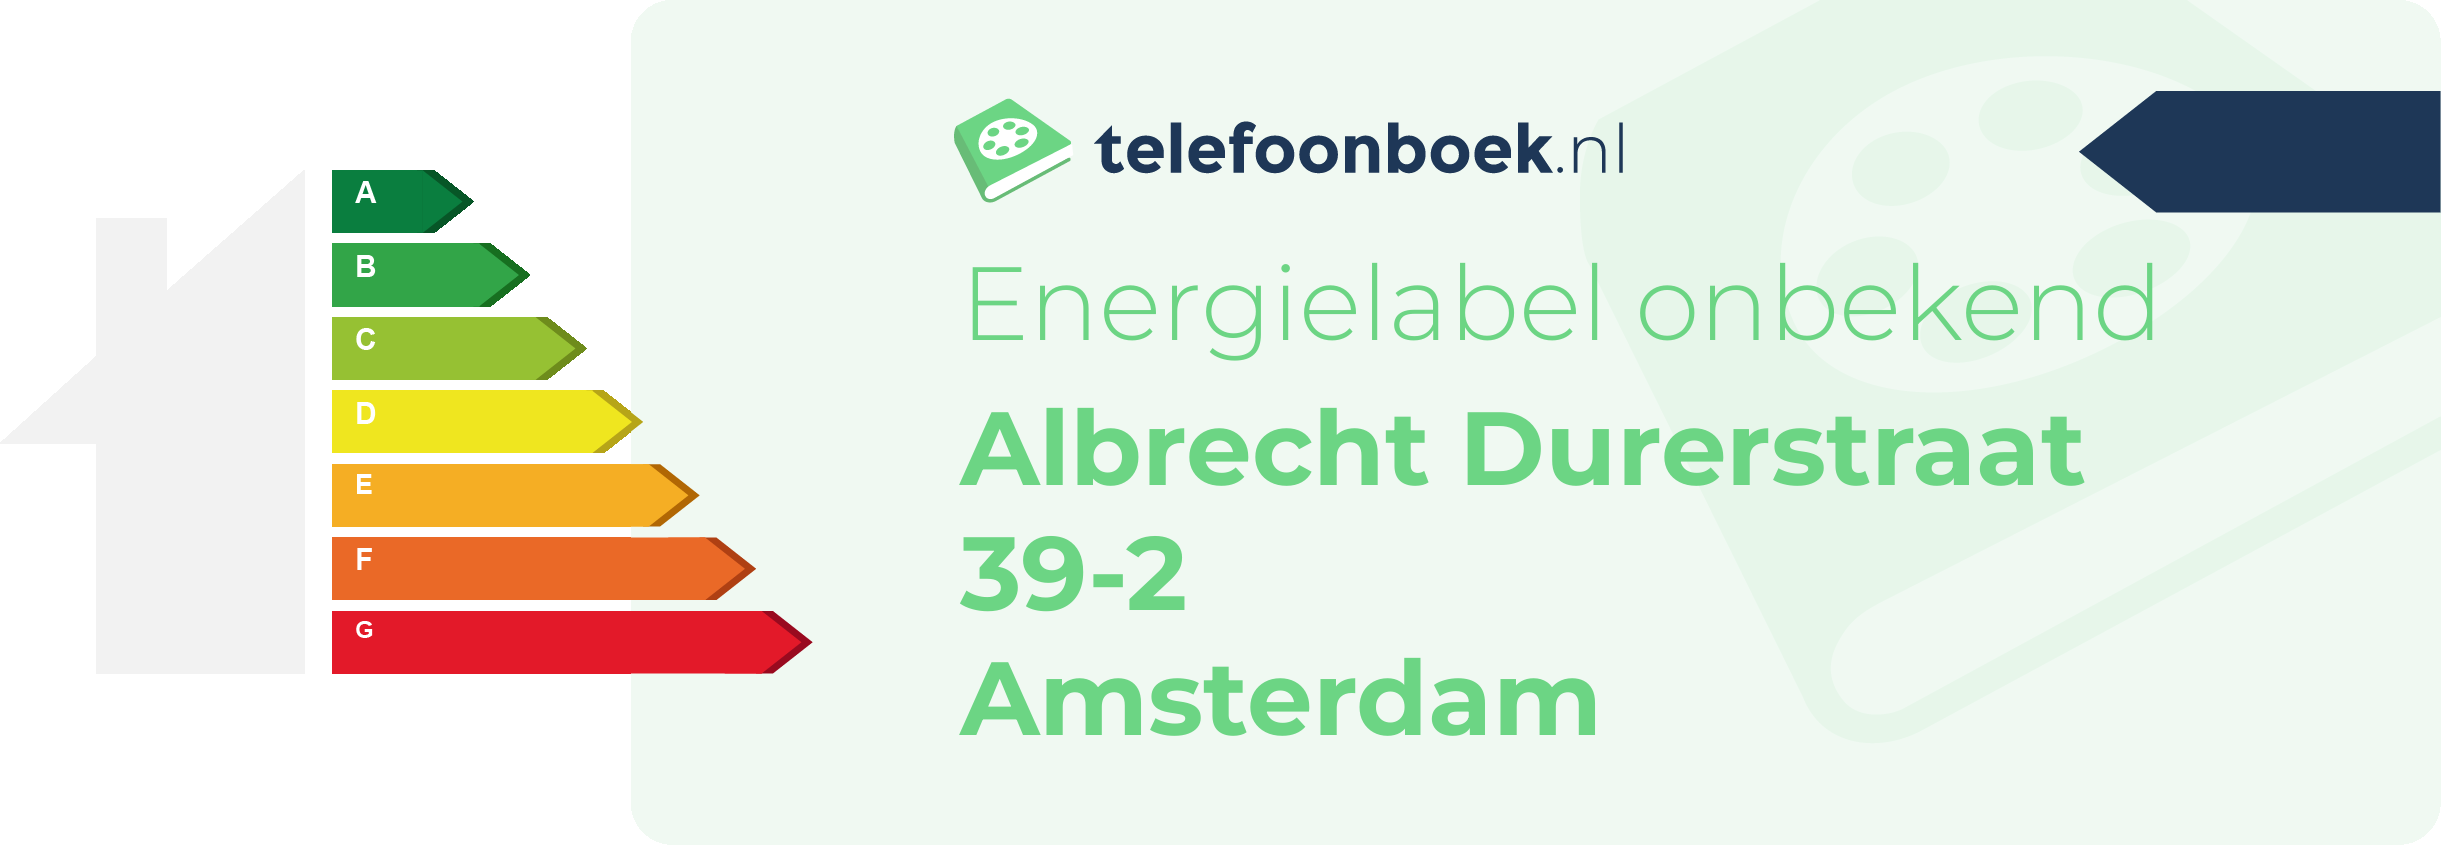 Energielabel Albrecht Durerstraat 39-2 Amsterdam